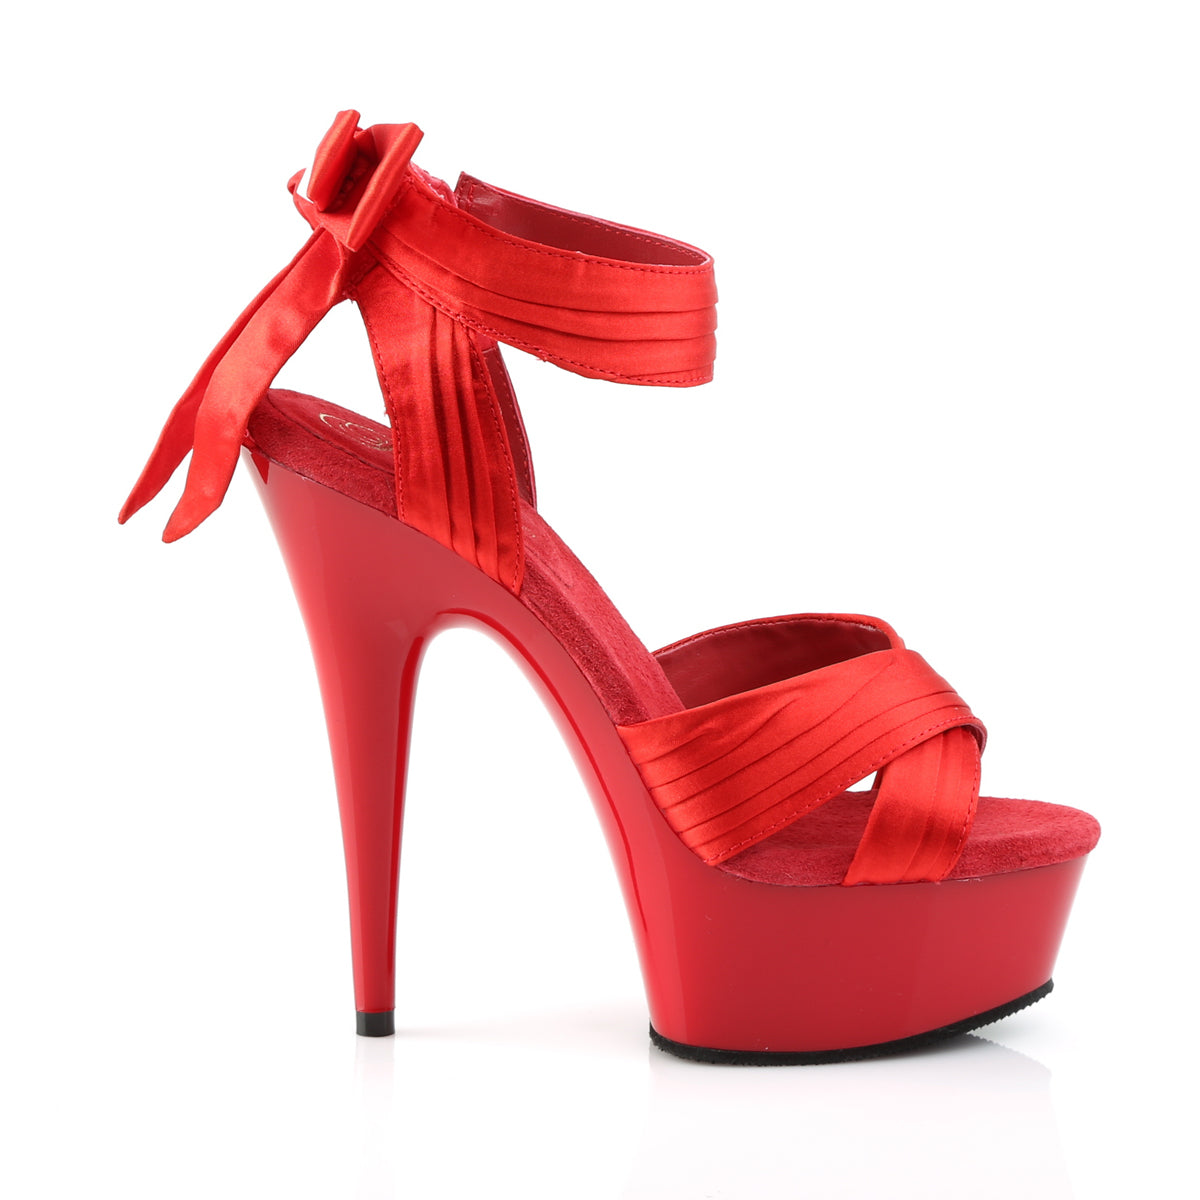 DELIGHT-668 Pleaser 6" Heel Red Satin Pole Dancing Platforms-Pleaser- Sexy Shoes Fetish Heels